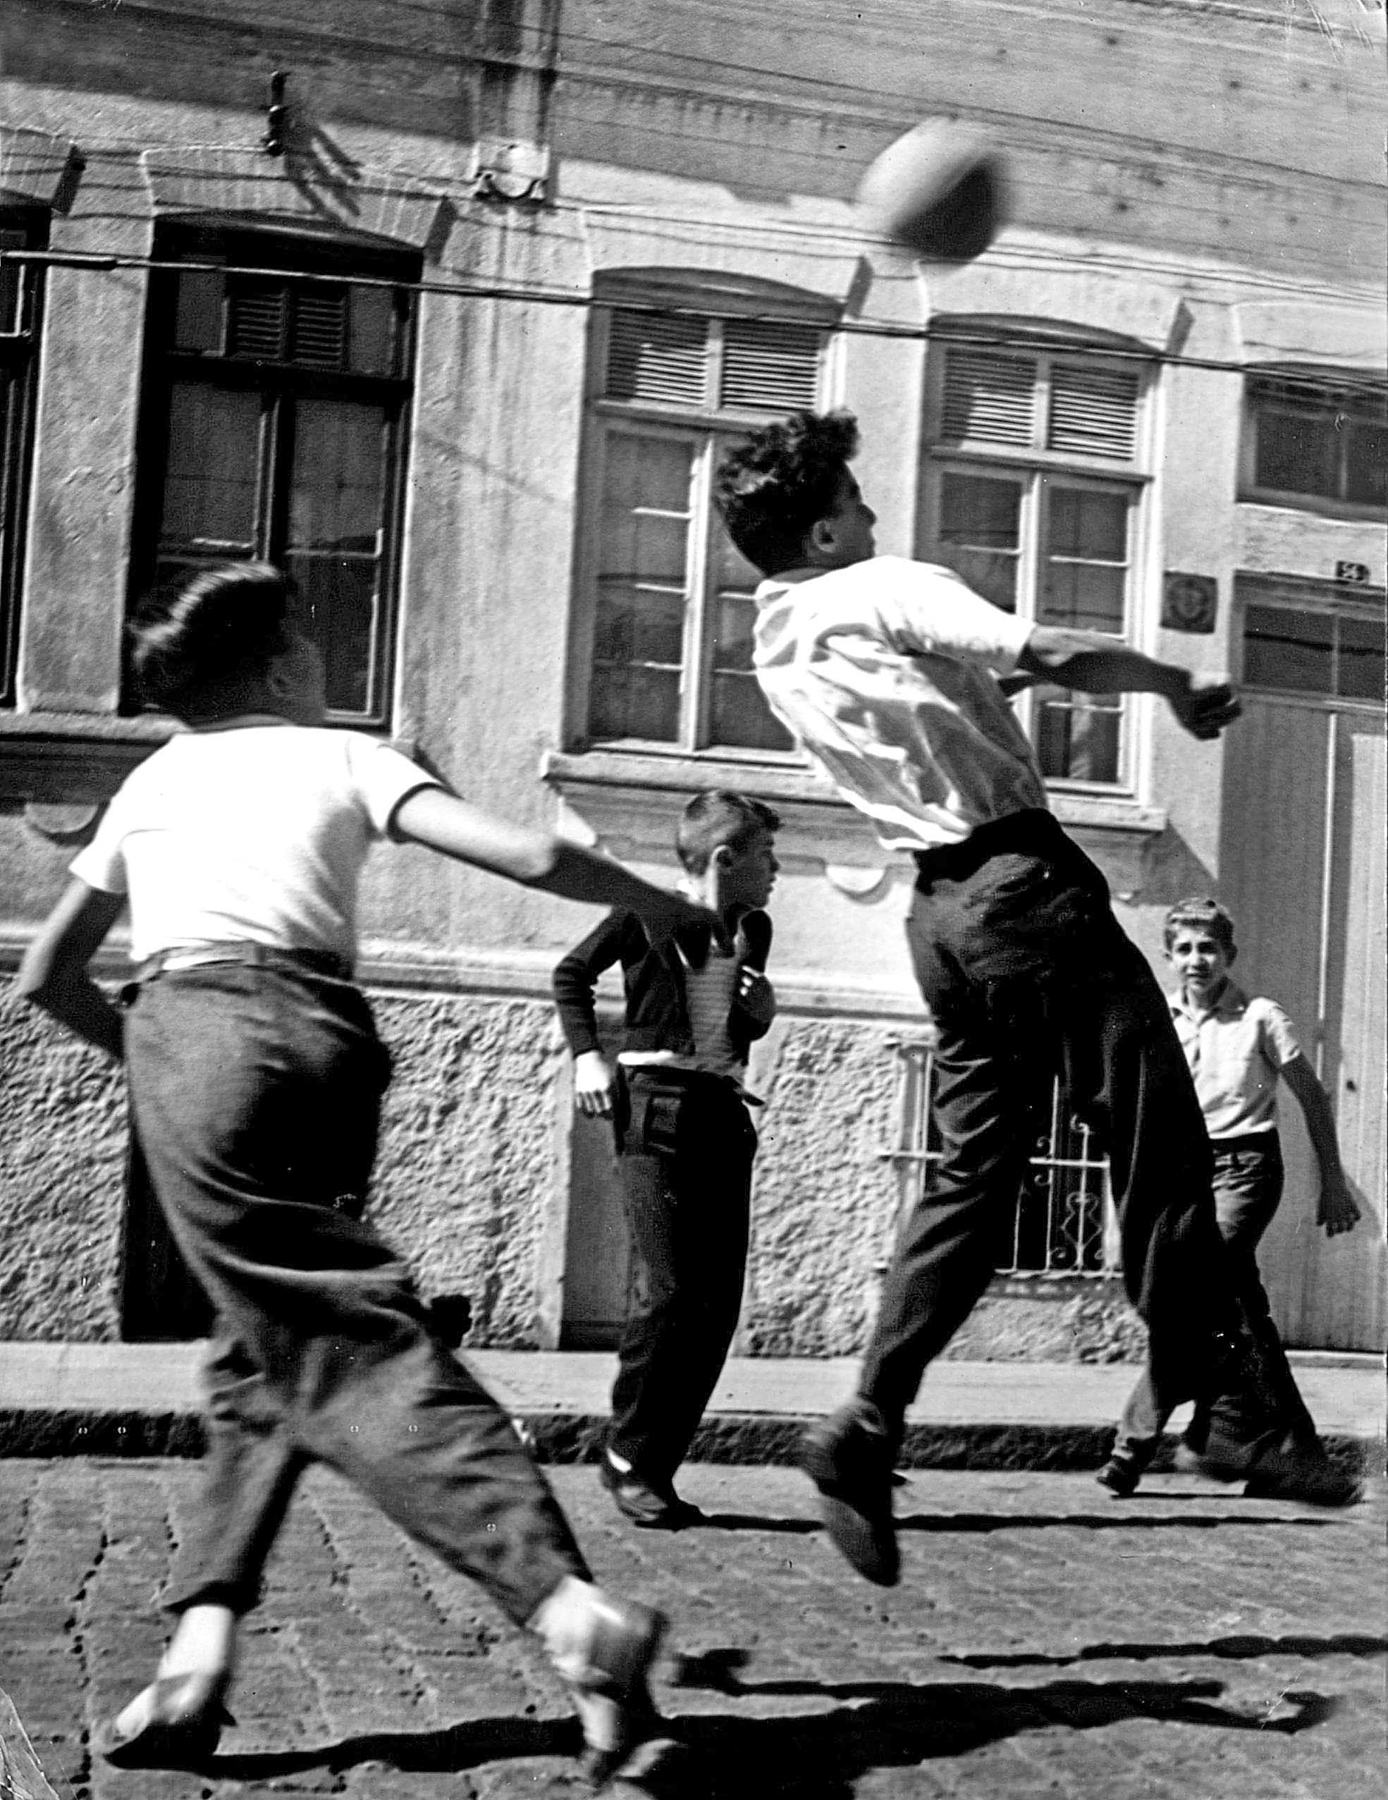 Fotografia em preto e branco. Um grupo de meninos em uma rua com calçamento de pedra, direcionados a uma bola de futebol. Ao fundo, casas.